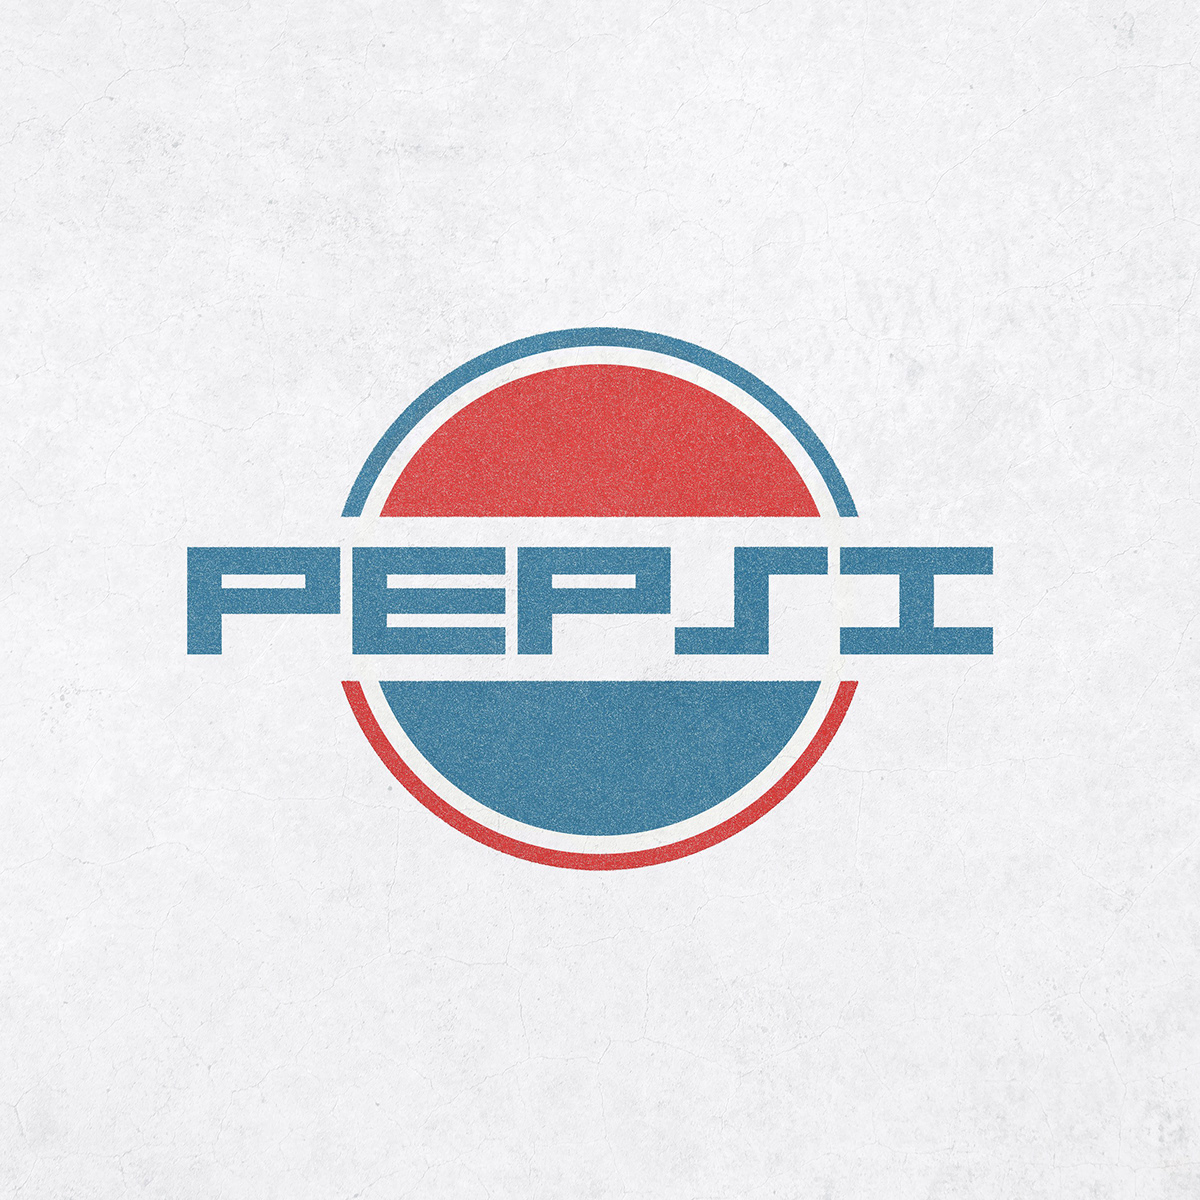 Coca Cola everyday pepsi starbucks typography logo wordmark Y2K Y2K LOGO